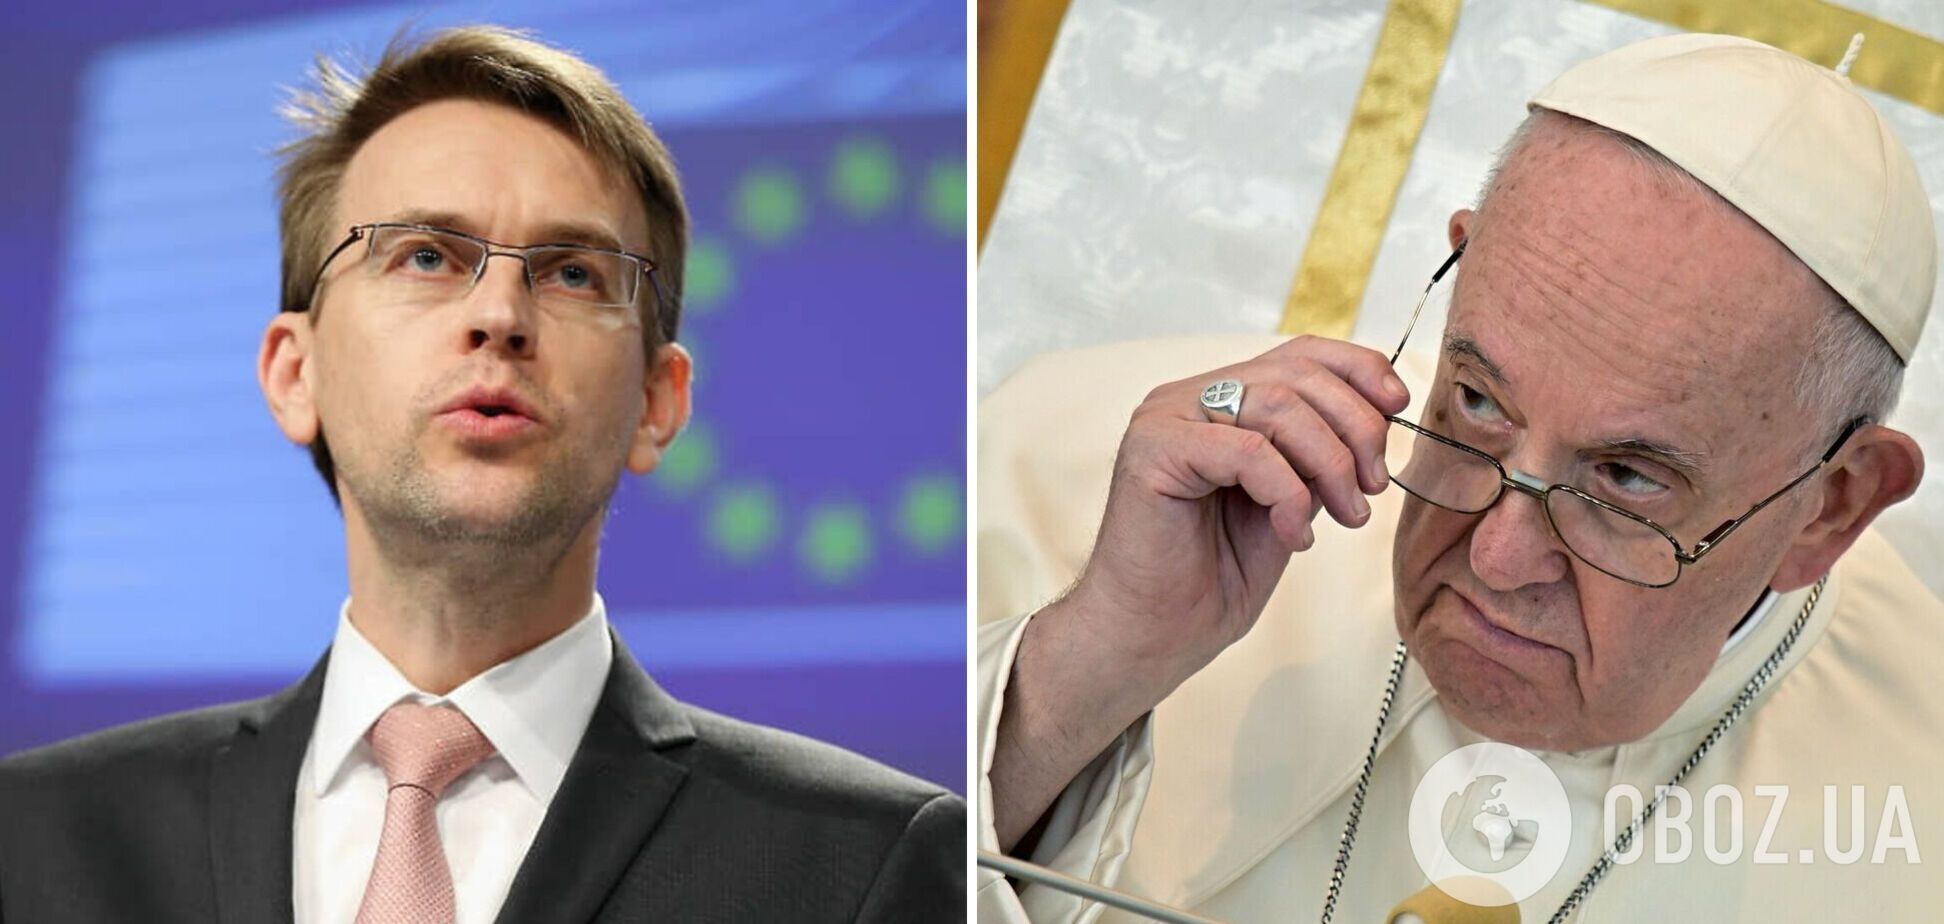 'Мир должен быть справедливым': в ЕС дали официальный ответ Папе Римскому на слова о 'белом флаге'